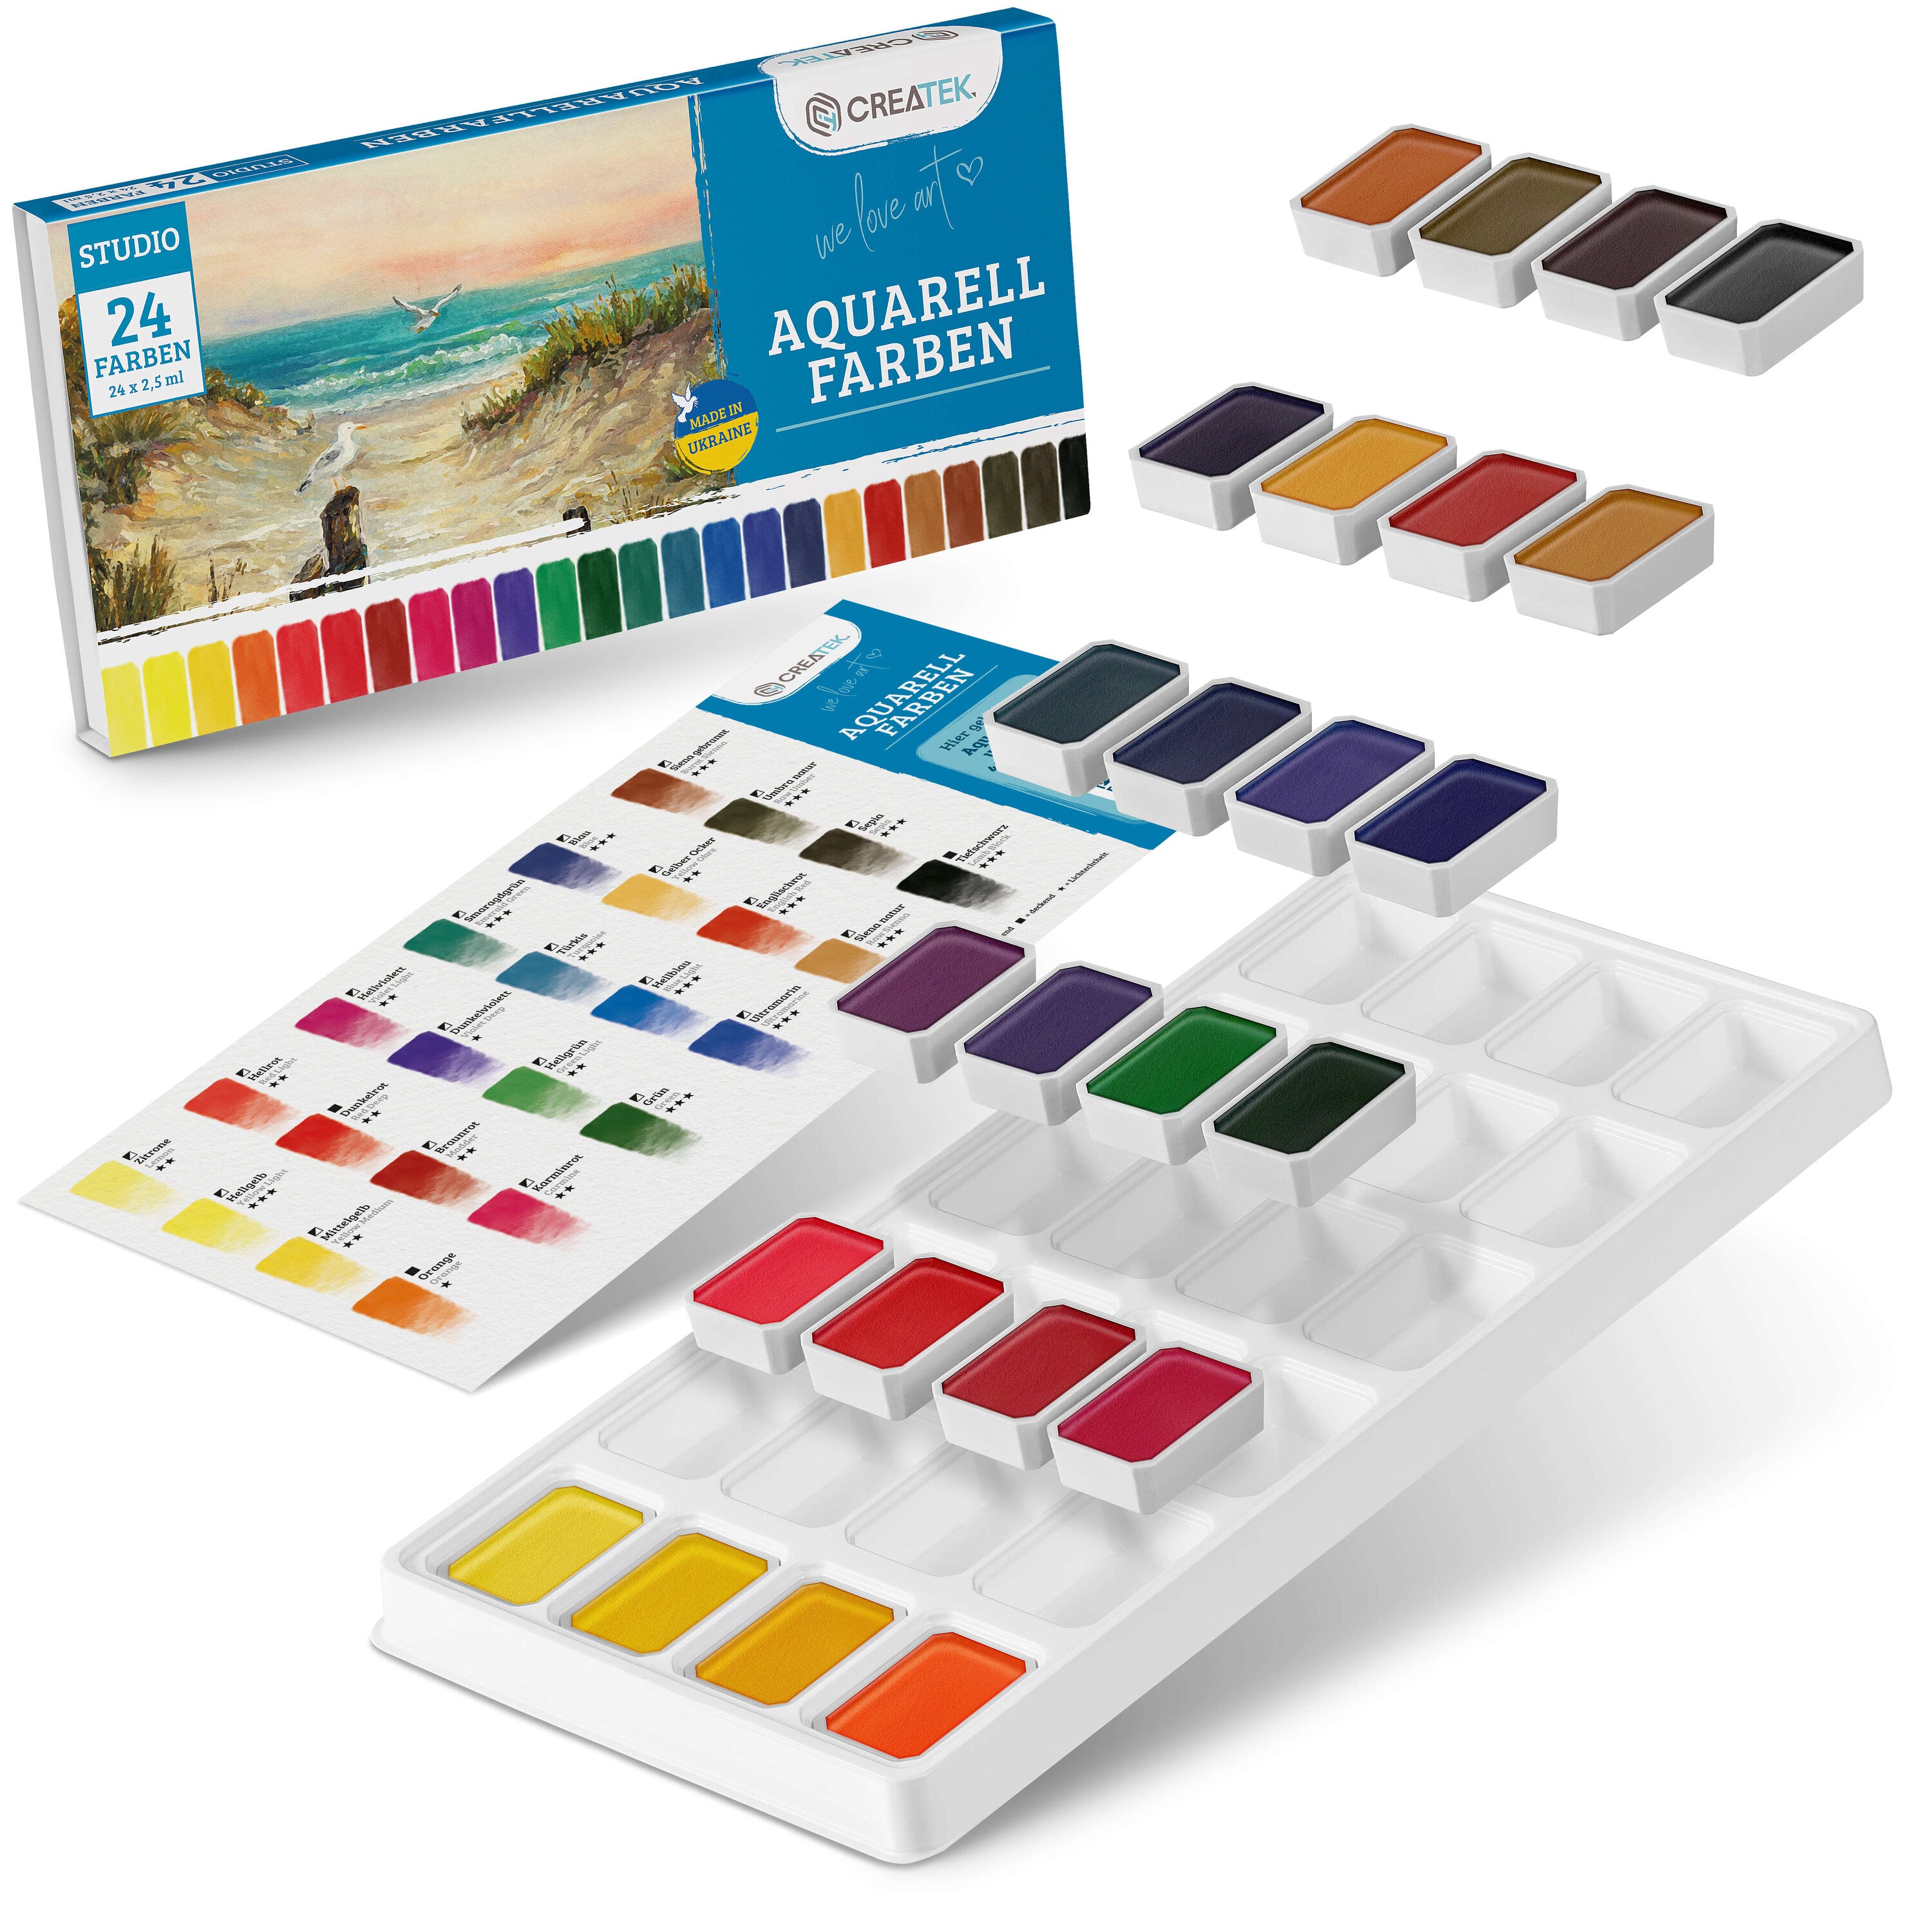 Aquarellfarben Set in Studio Qualität | 24 leuchtende & kräftige Wasserfarben | Stark Pigmentiert und Ergiebig!